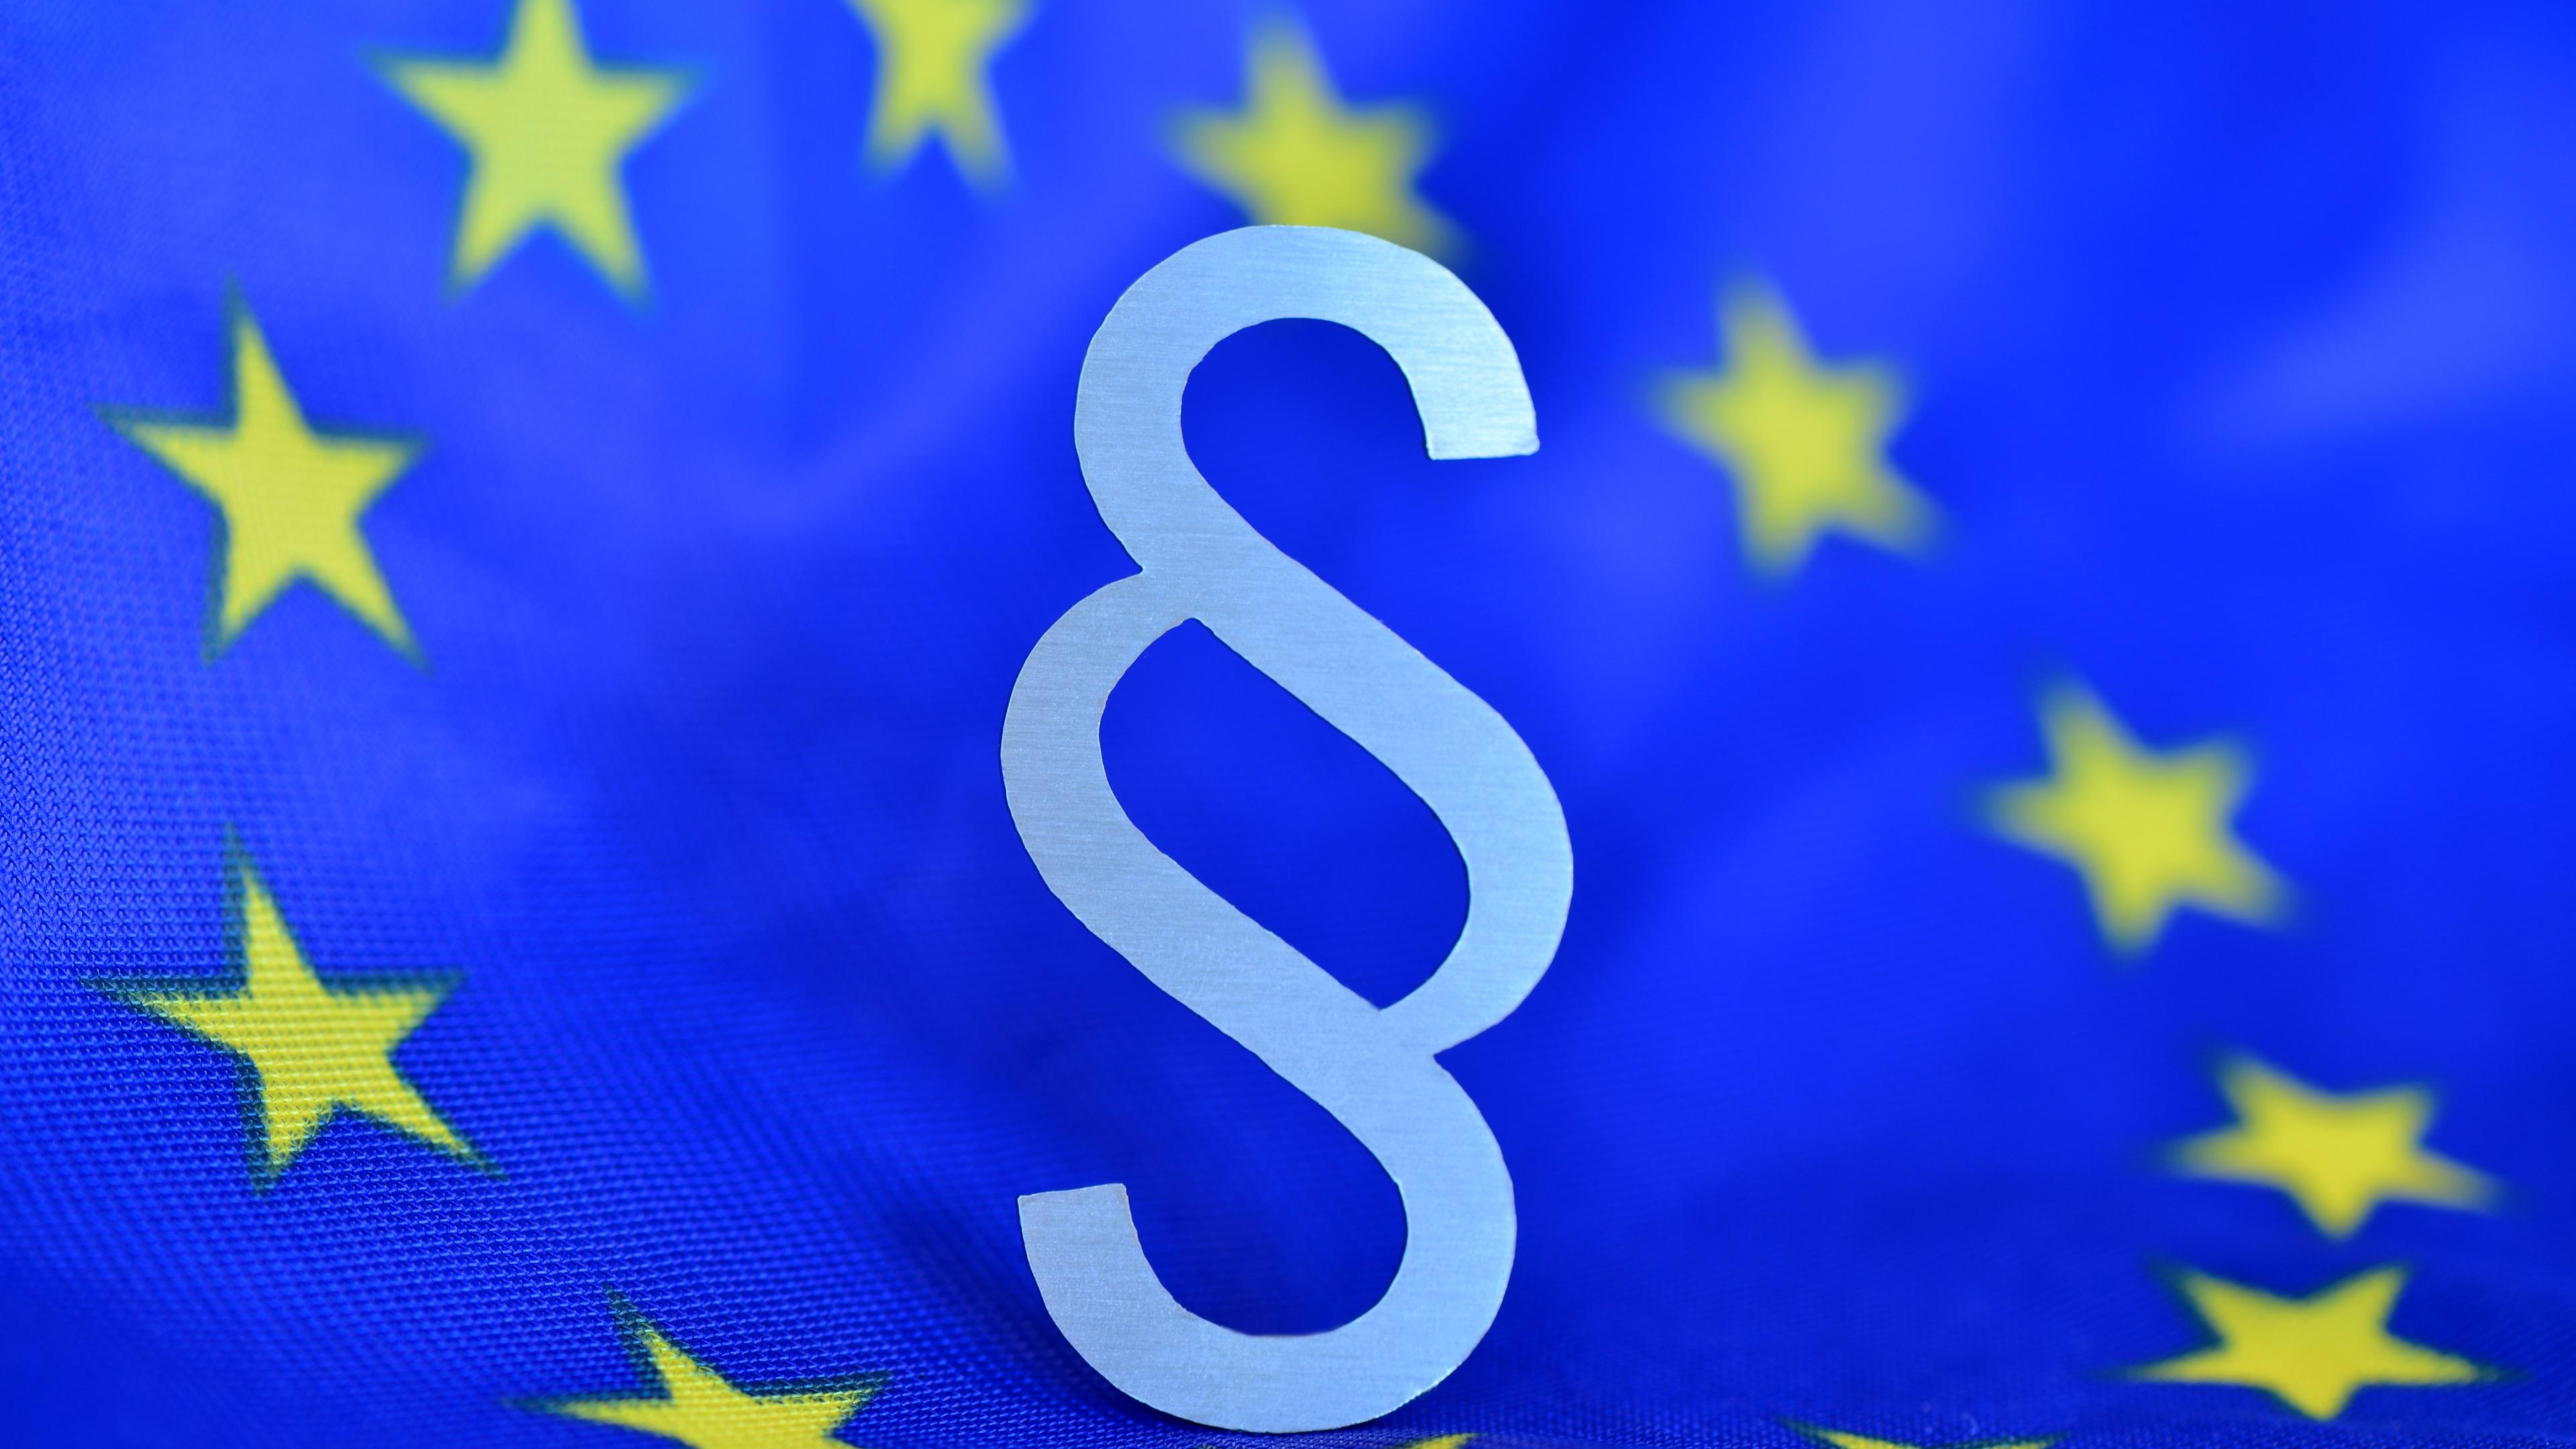 Paragrafenzeichen vor blauer Europaflagge (als Mittelpunkt des Europasternenkreises)